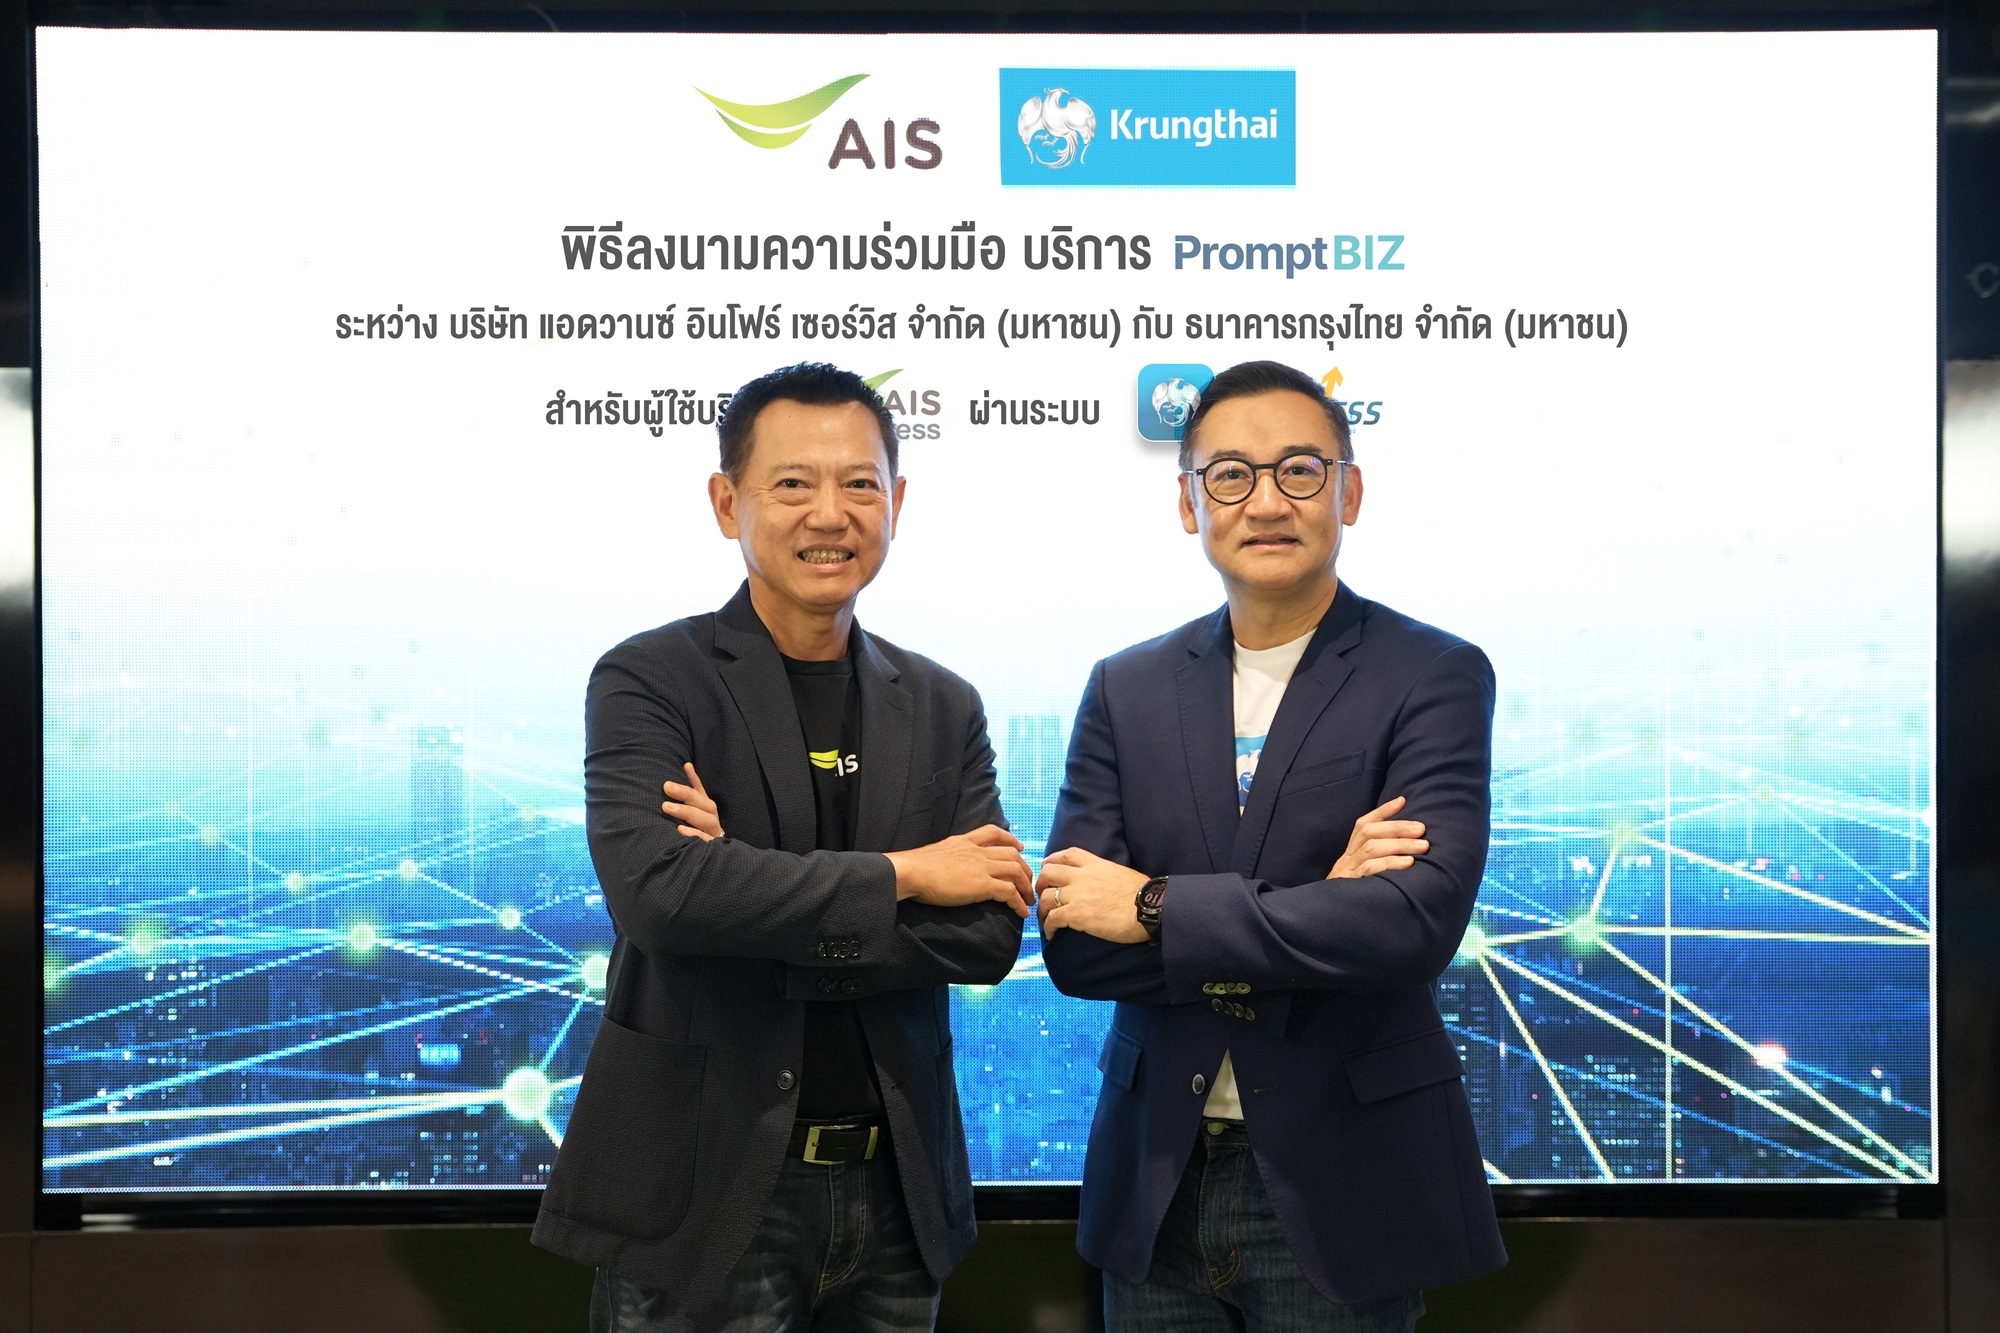 AIS จับมือ กรุงไทย ให้บริการ 'PromptBIZ' ผ่านแพลตฟอร์ม Krungthai BUSINESS เป็นรายแรกในอุตสาหกรรมโทรคมนาคม 